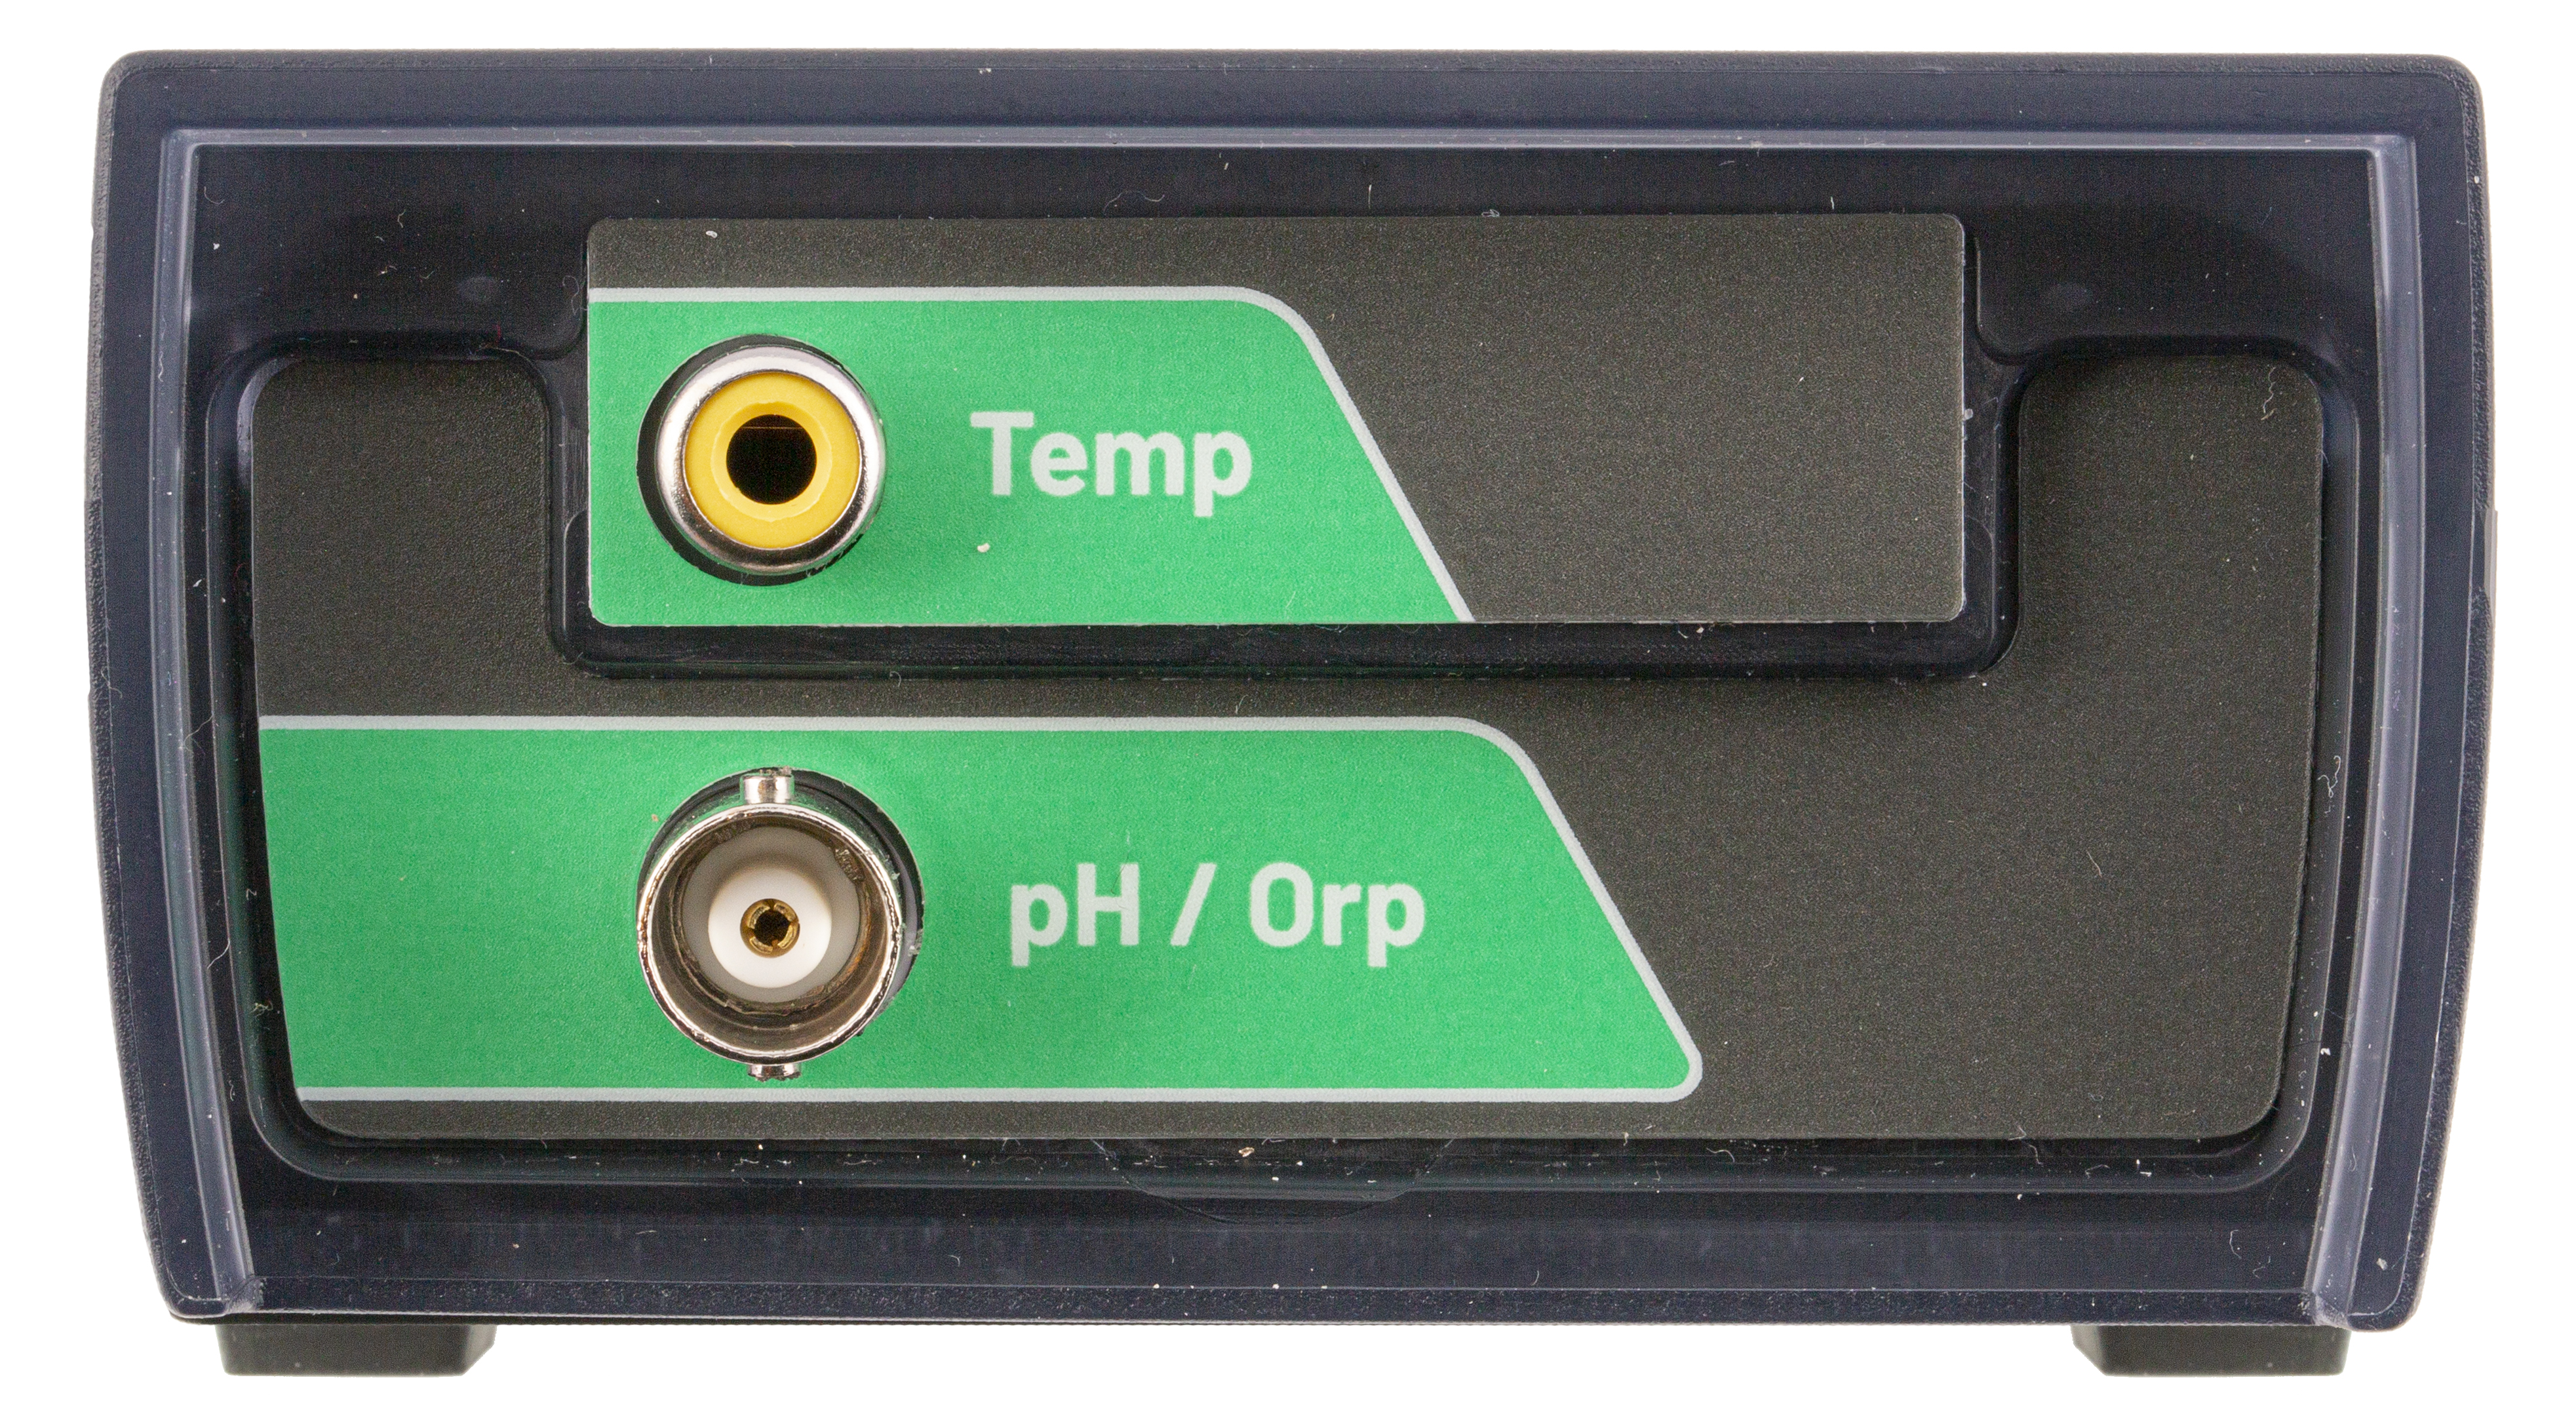 XS pH 7 Vio tragbares pH-Messgerät mit 201T-Elektrode mit integriertem Temperaturfühler